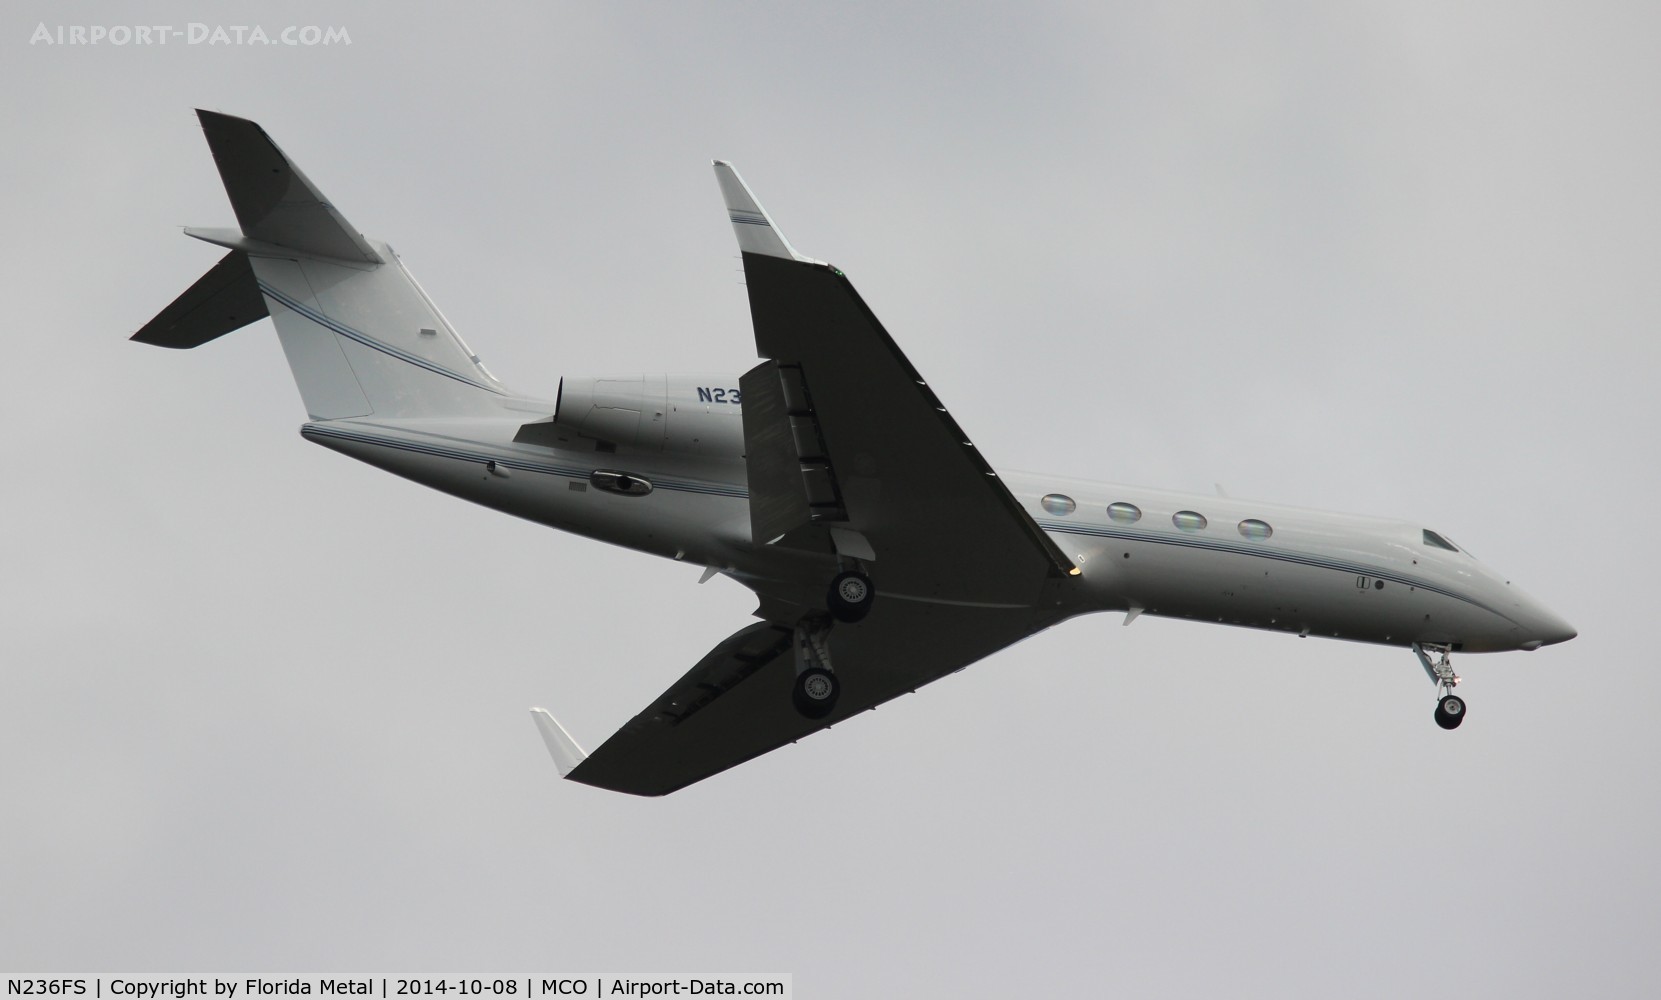 N236FS, 2011 Gulfstream Aerospace GIV-X (G450) C/N 4236, Gulfstream 450